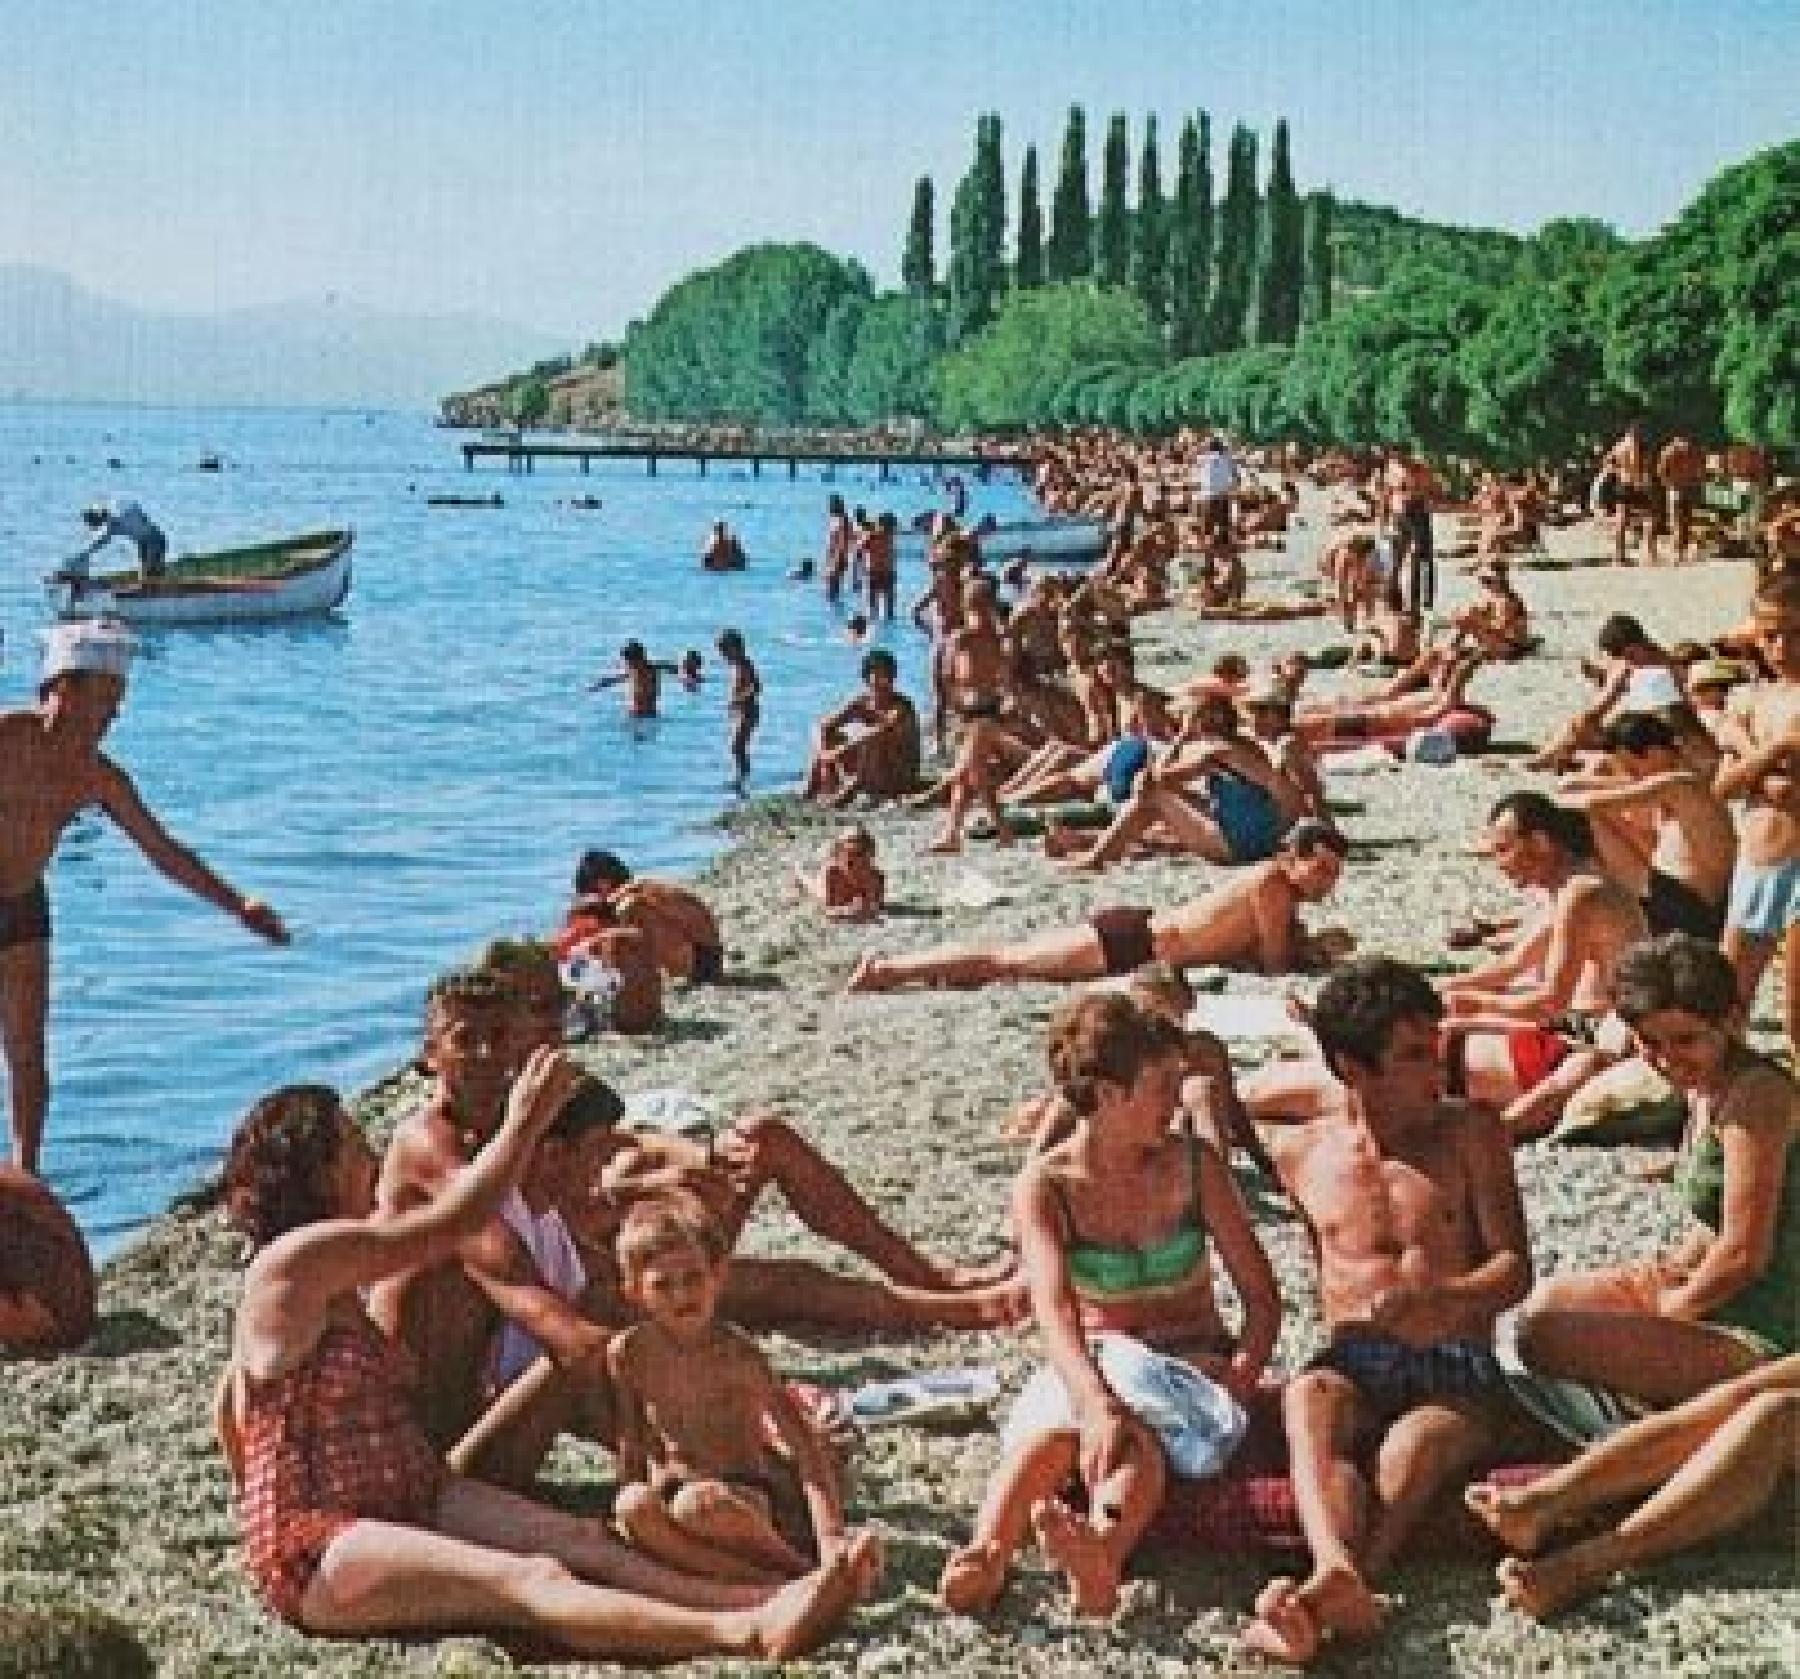 Fotografija iz bivše Jugoslavije sa Jadranskog mora koja je šokirala današnju omladinu